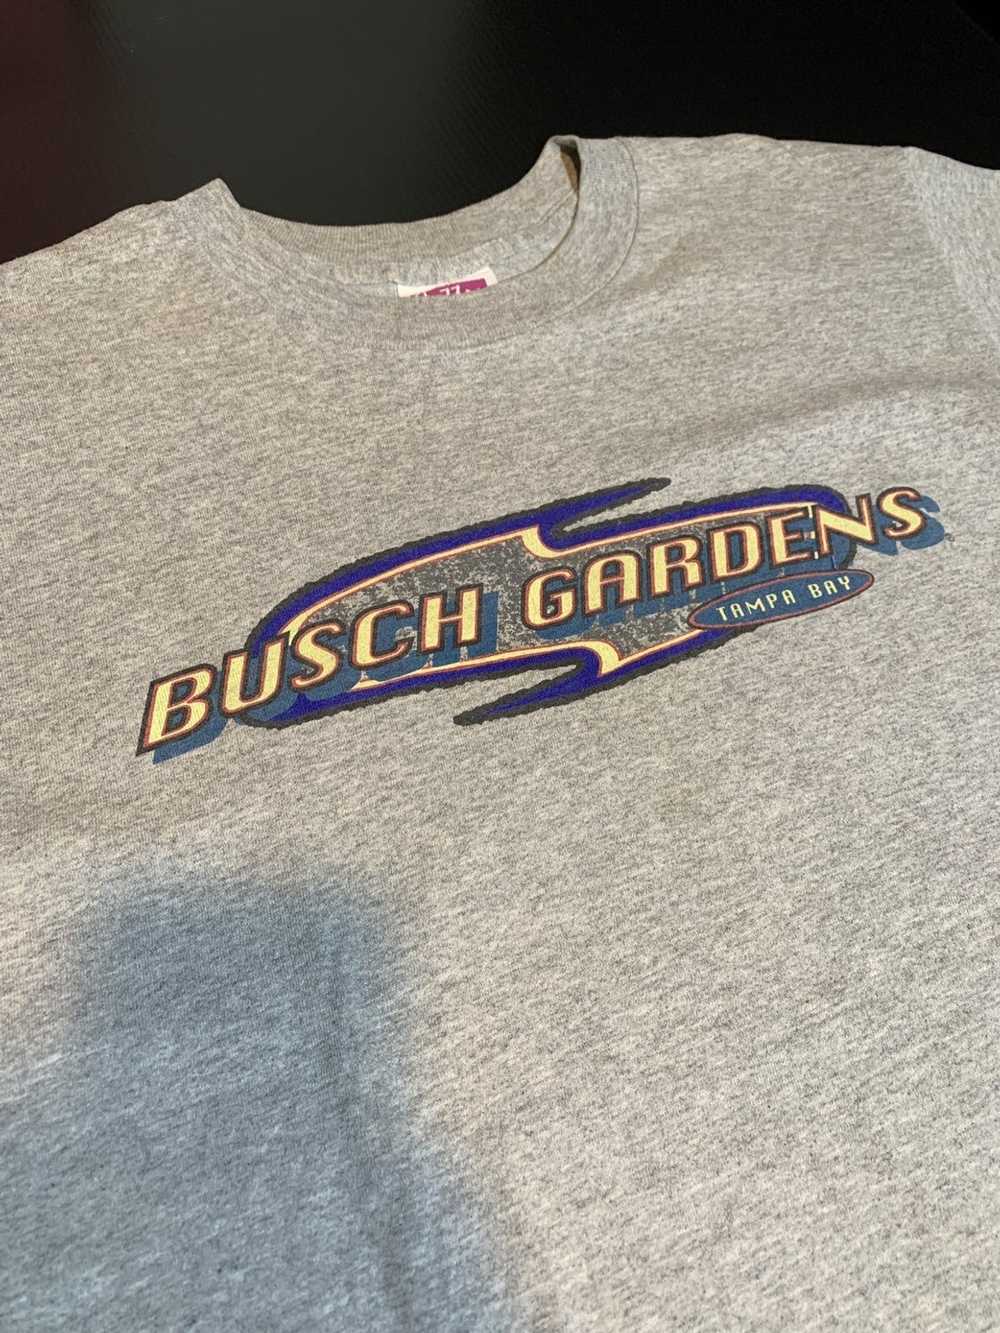 Vintage Vintage Single Stitch Busch Gardens Shirt - image 2